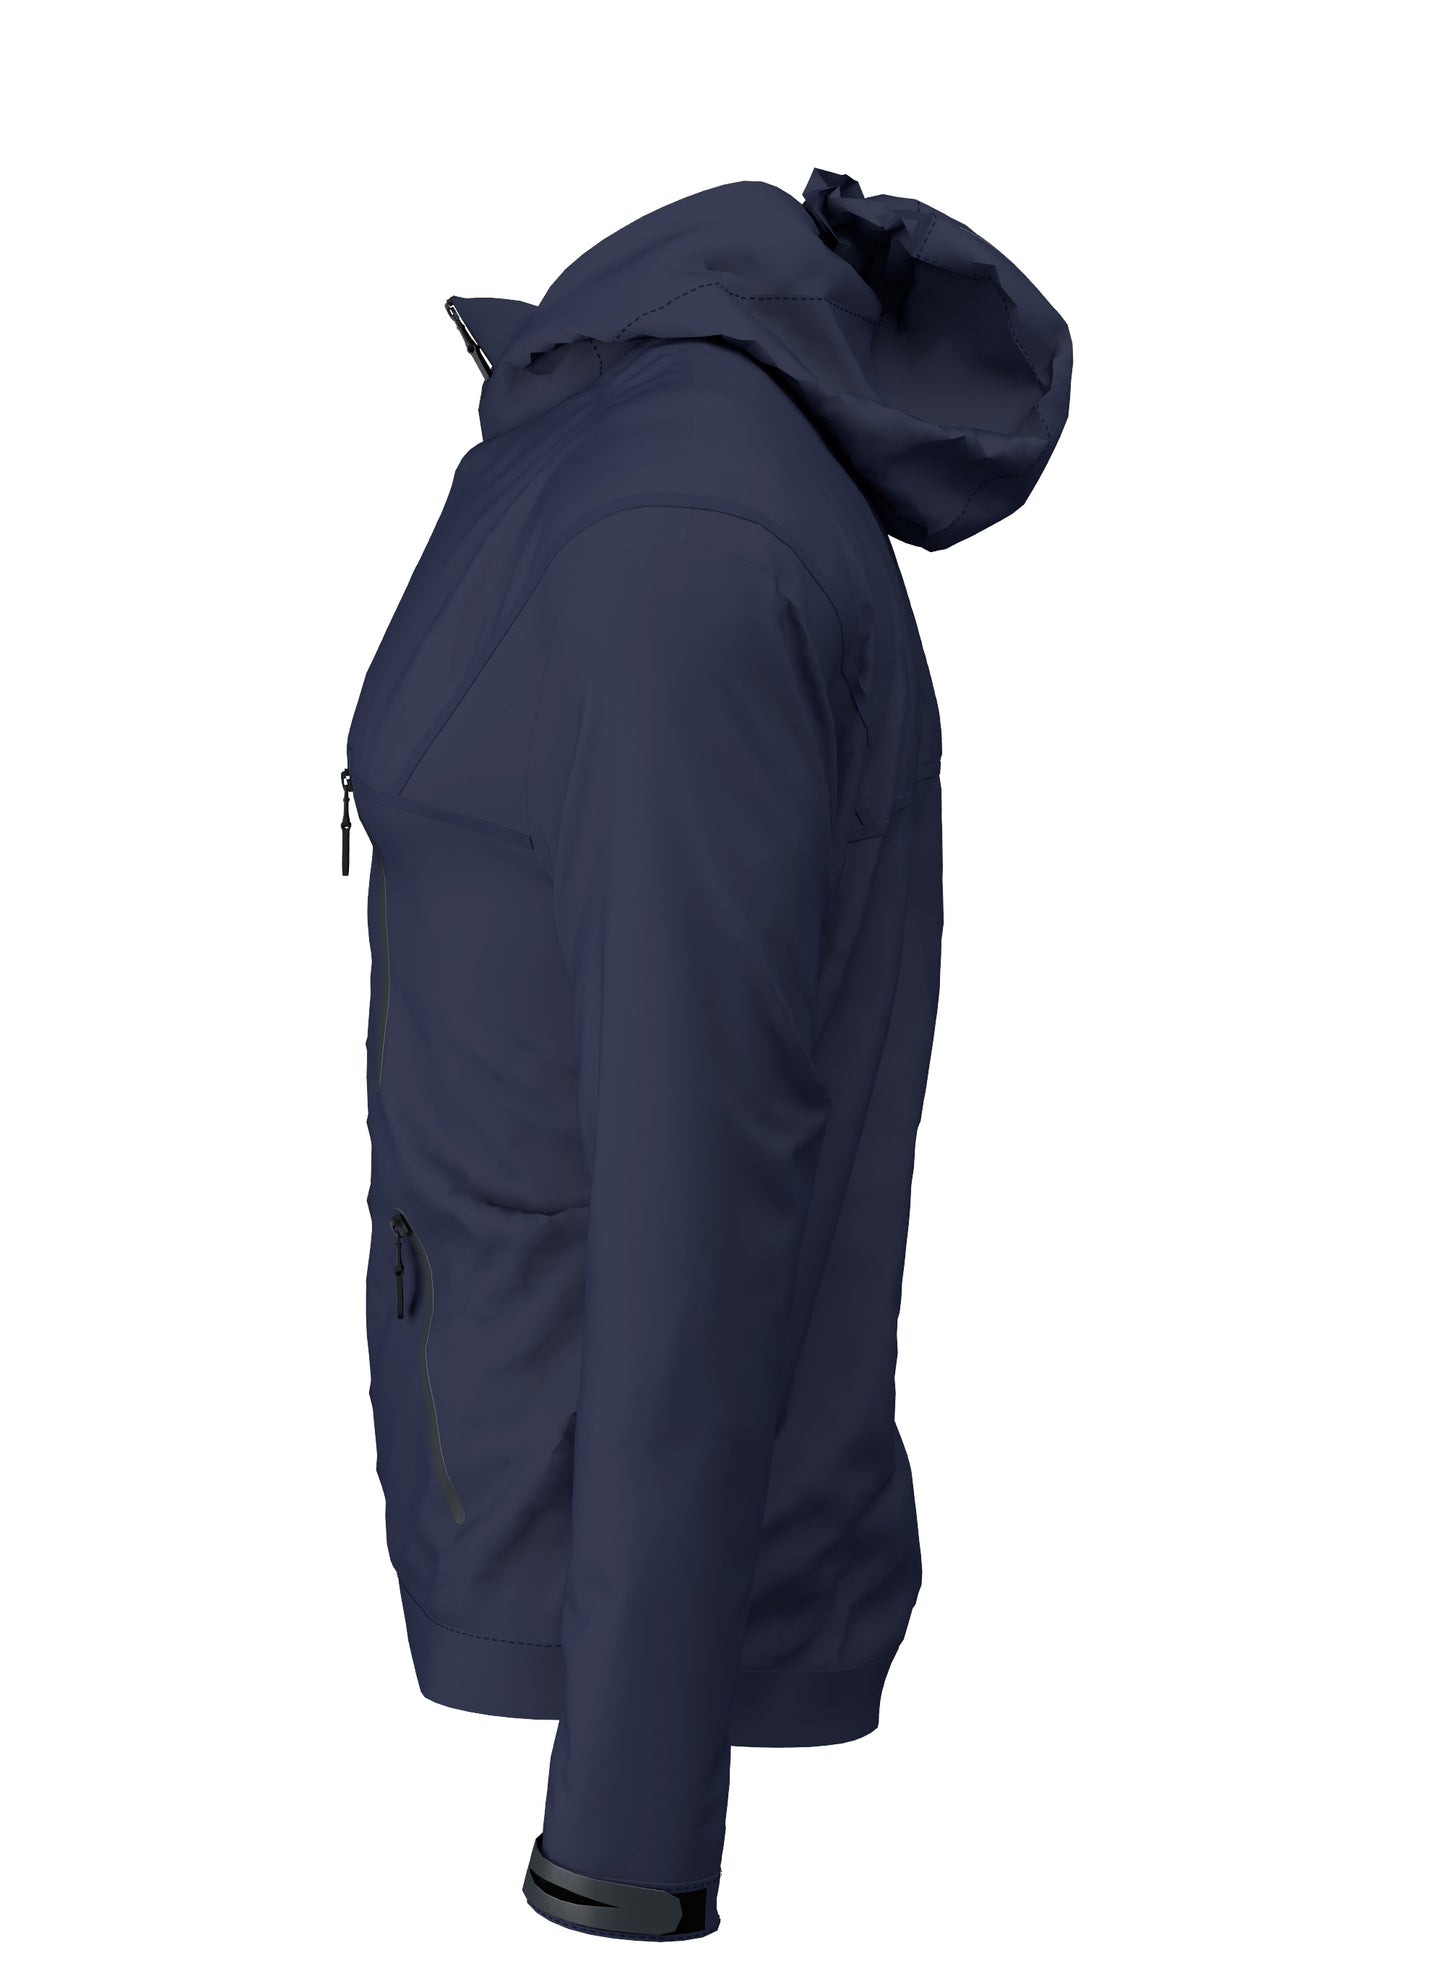 Elite Tech Waterproof Jacket - Navy/Navy